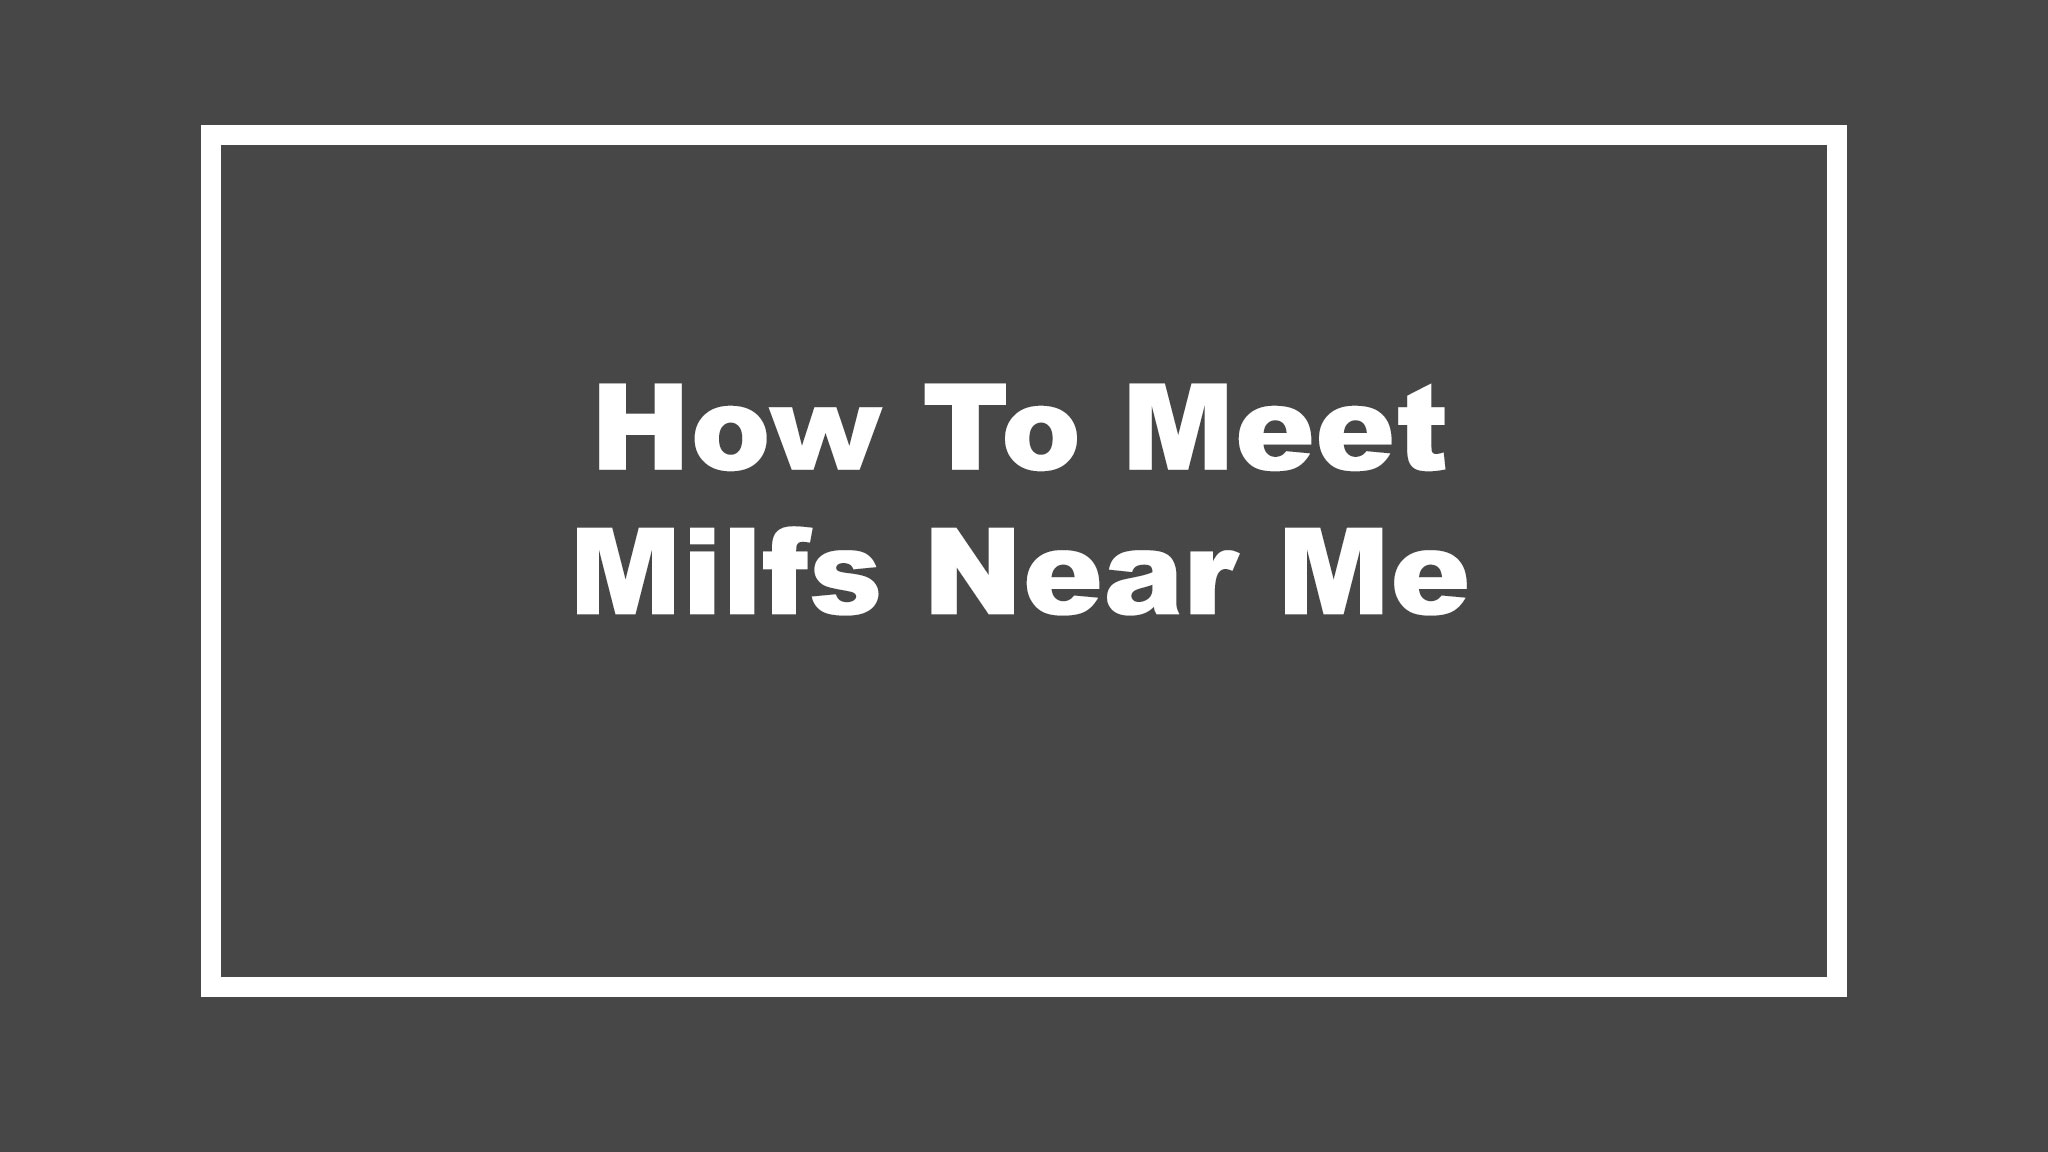 milfs near me